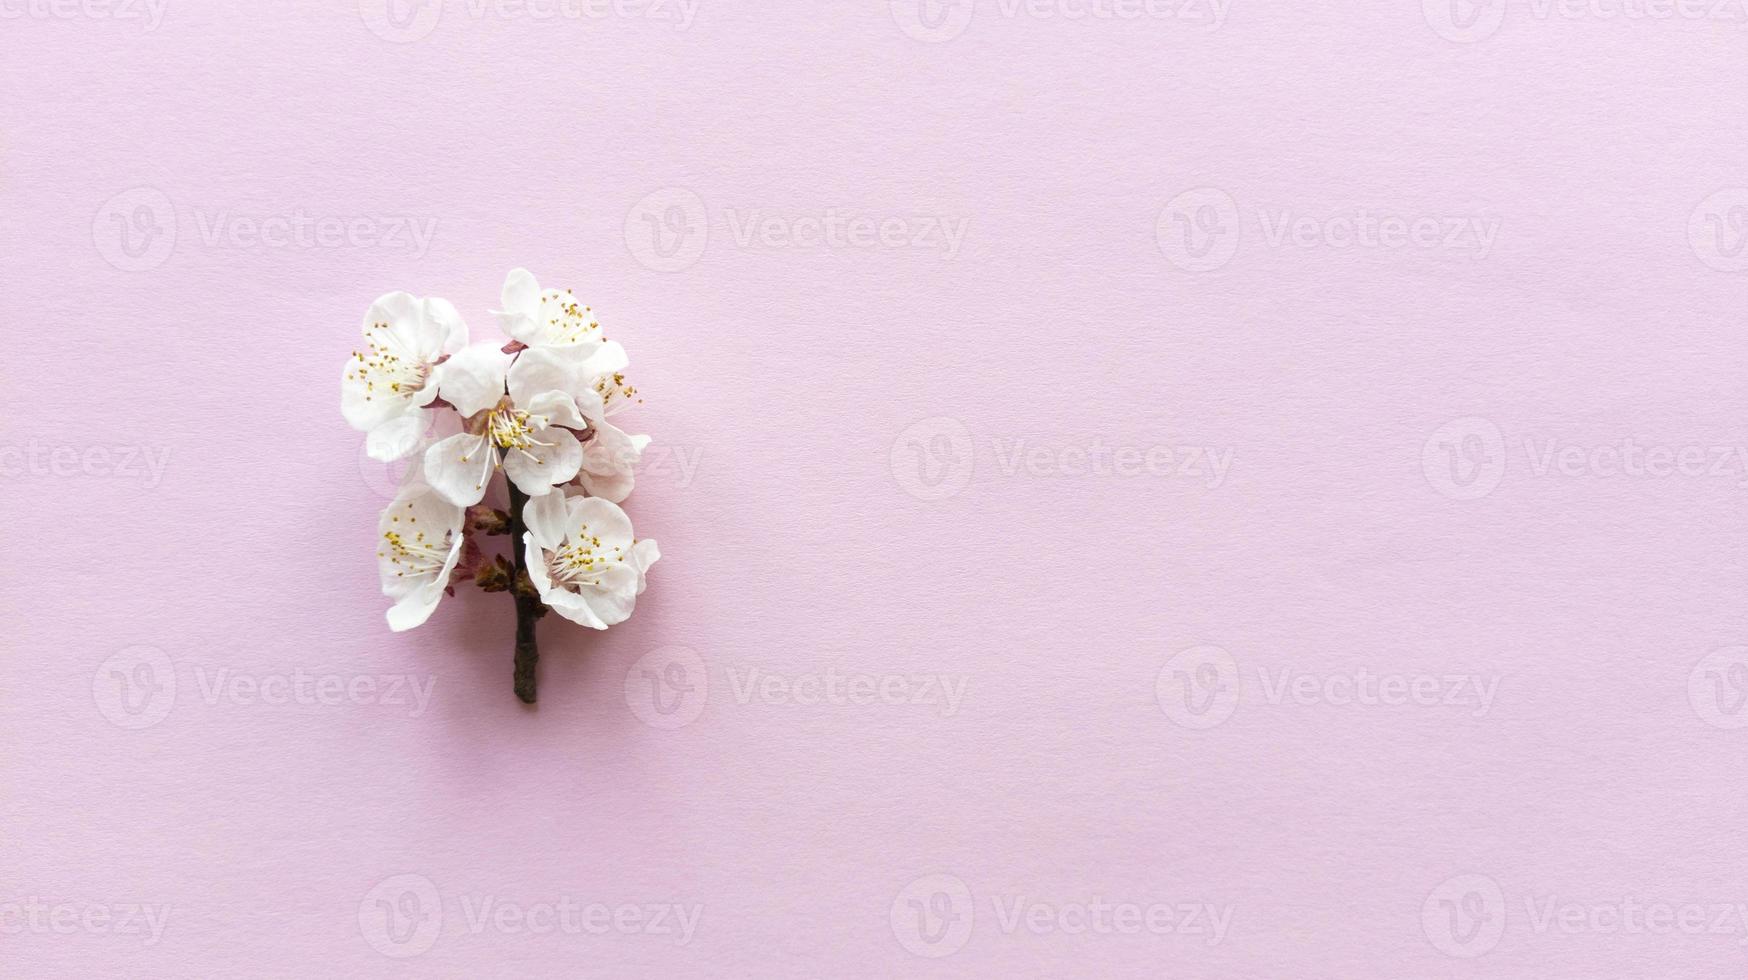 fioritura su sfondo rosa. semplice piatto disteso con texture pastello foto